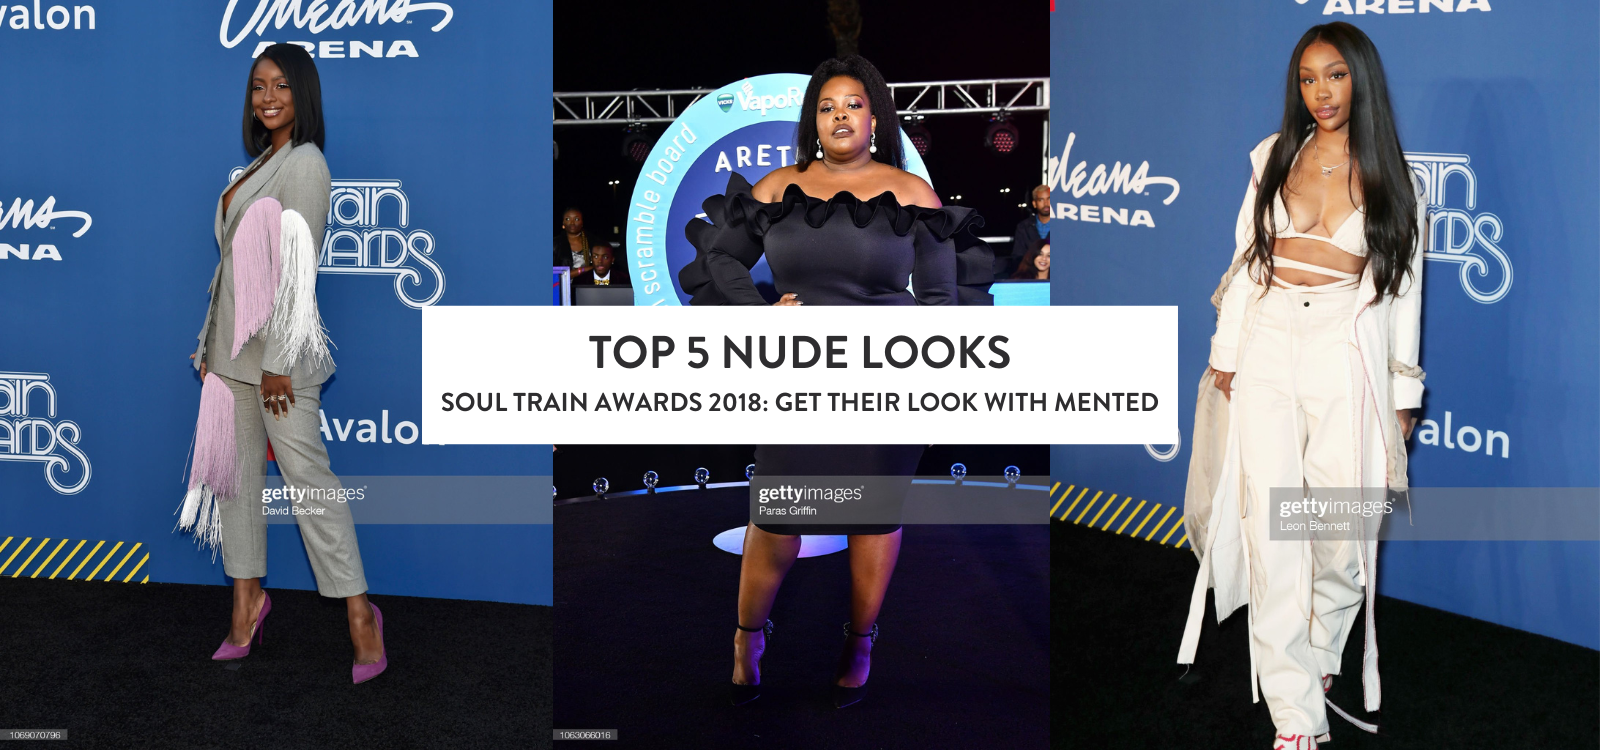 Top 5 Nude Looks: 2018 Soul Train Awards